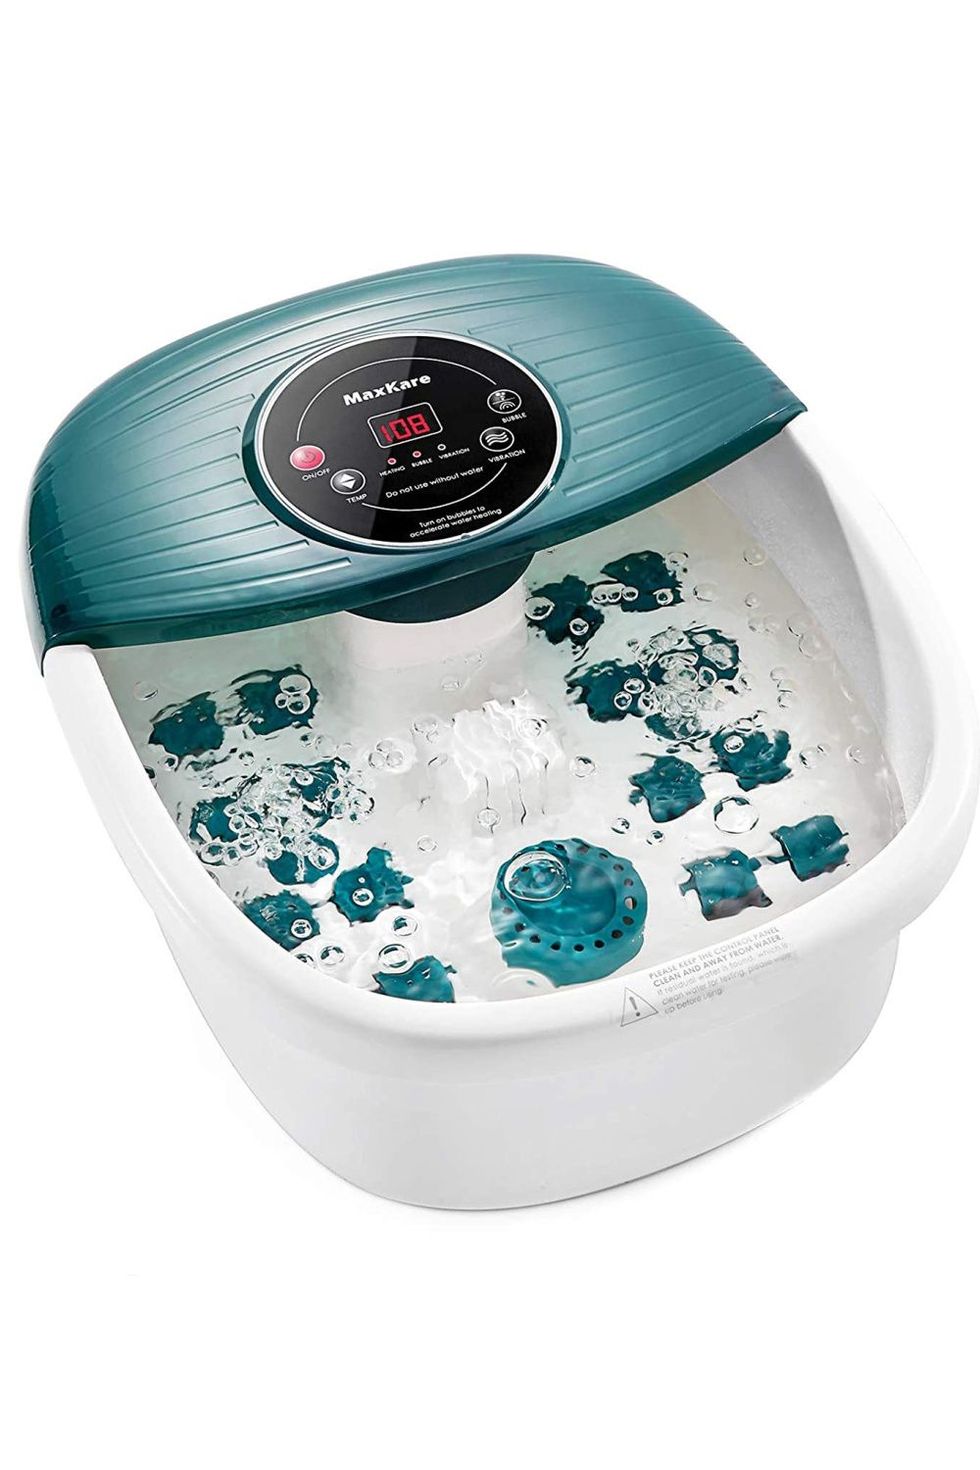 MaxKare Foot Bath Spa Massager: Wireless Remote Control, 8 Shiatsu